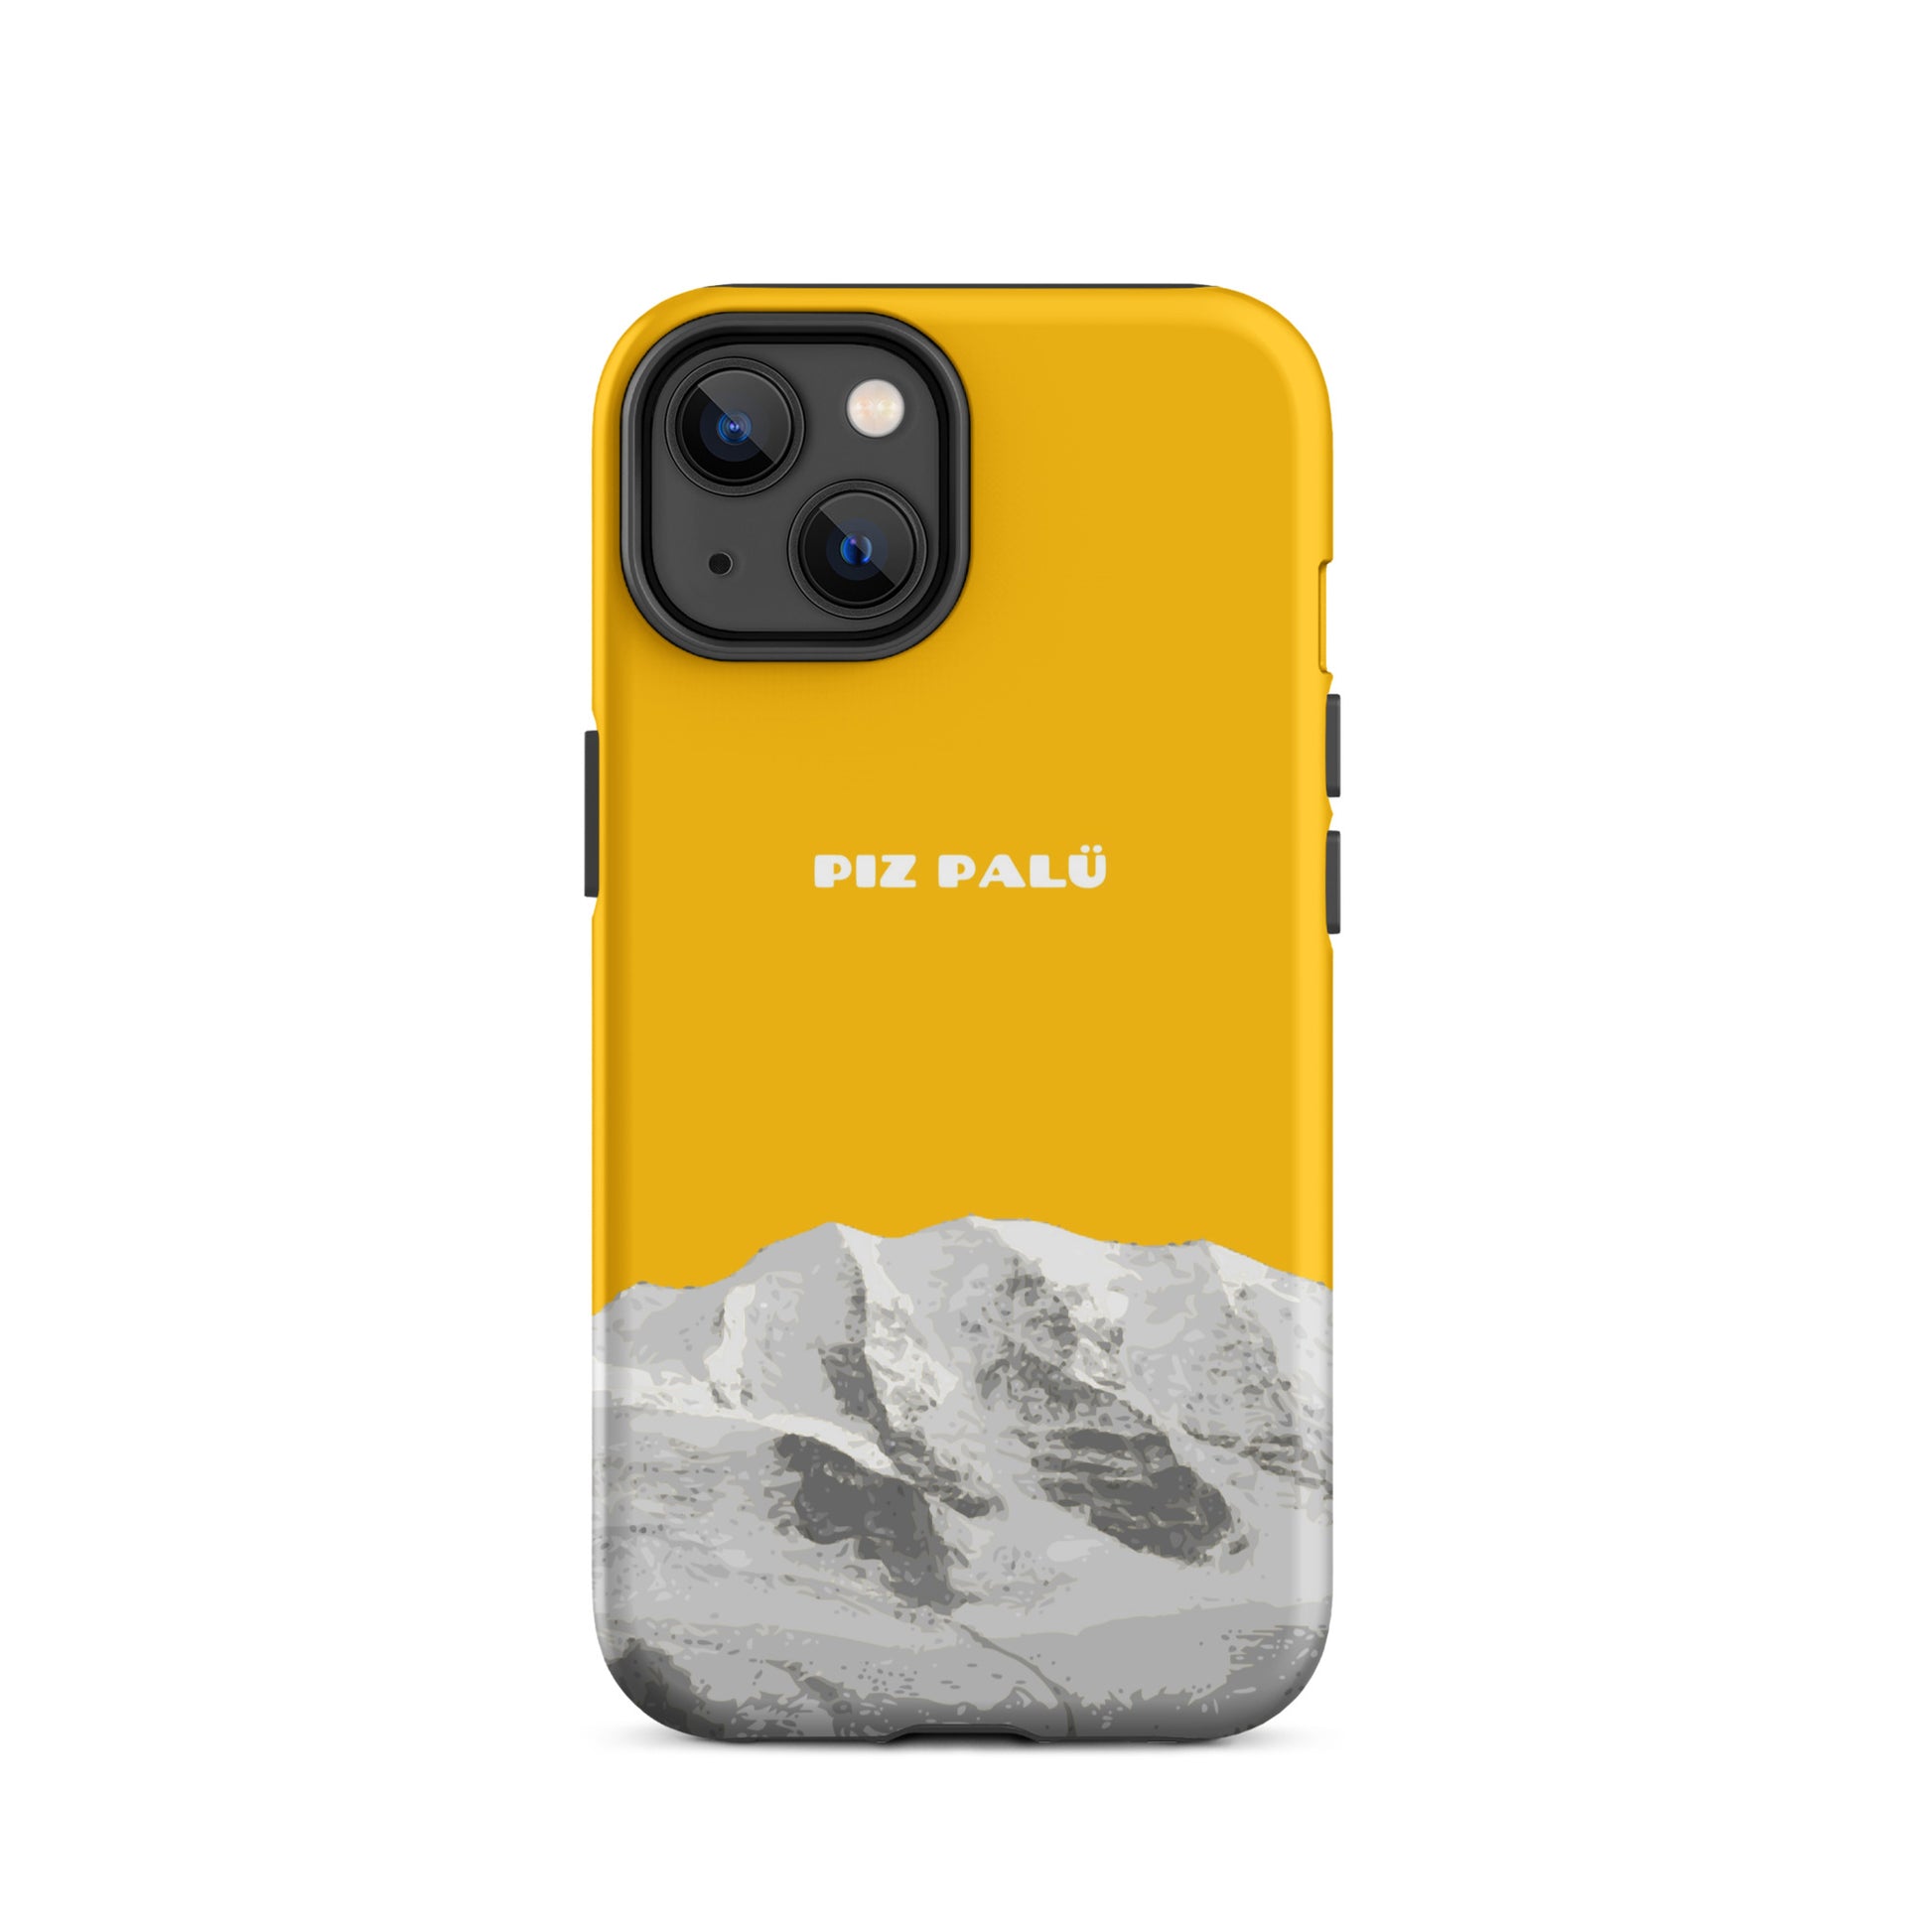 Hülle für das iPhone 14 von Apple in der Farbe Goldgelb, dass den Piz Palü in Graubünden zeigt.